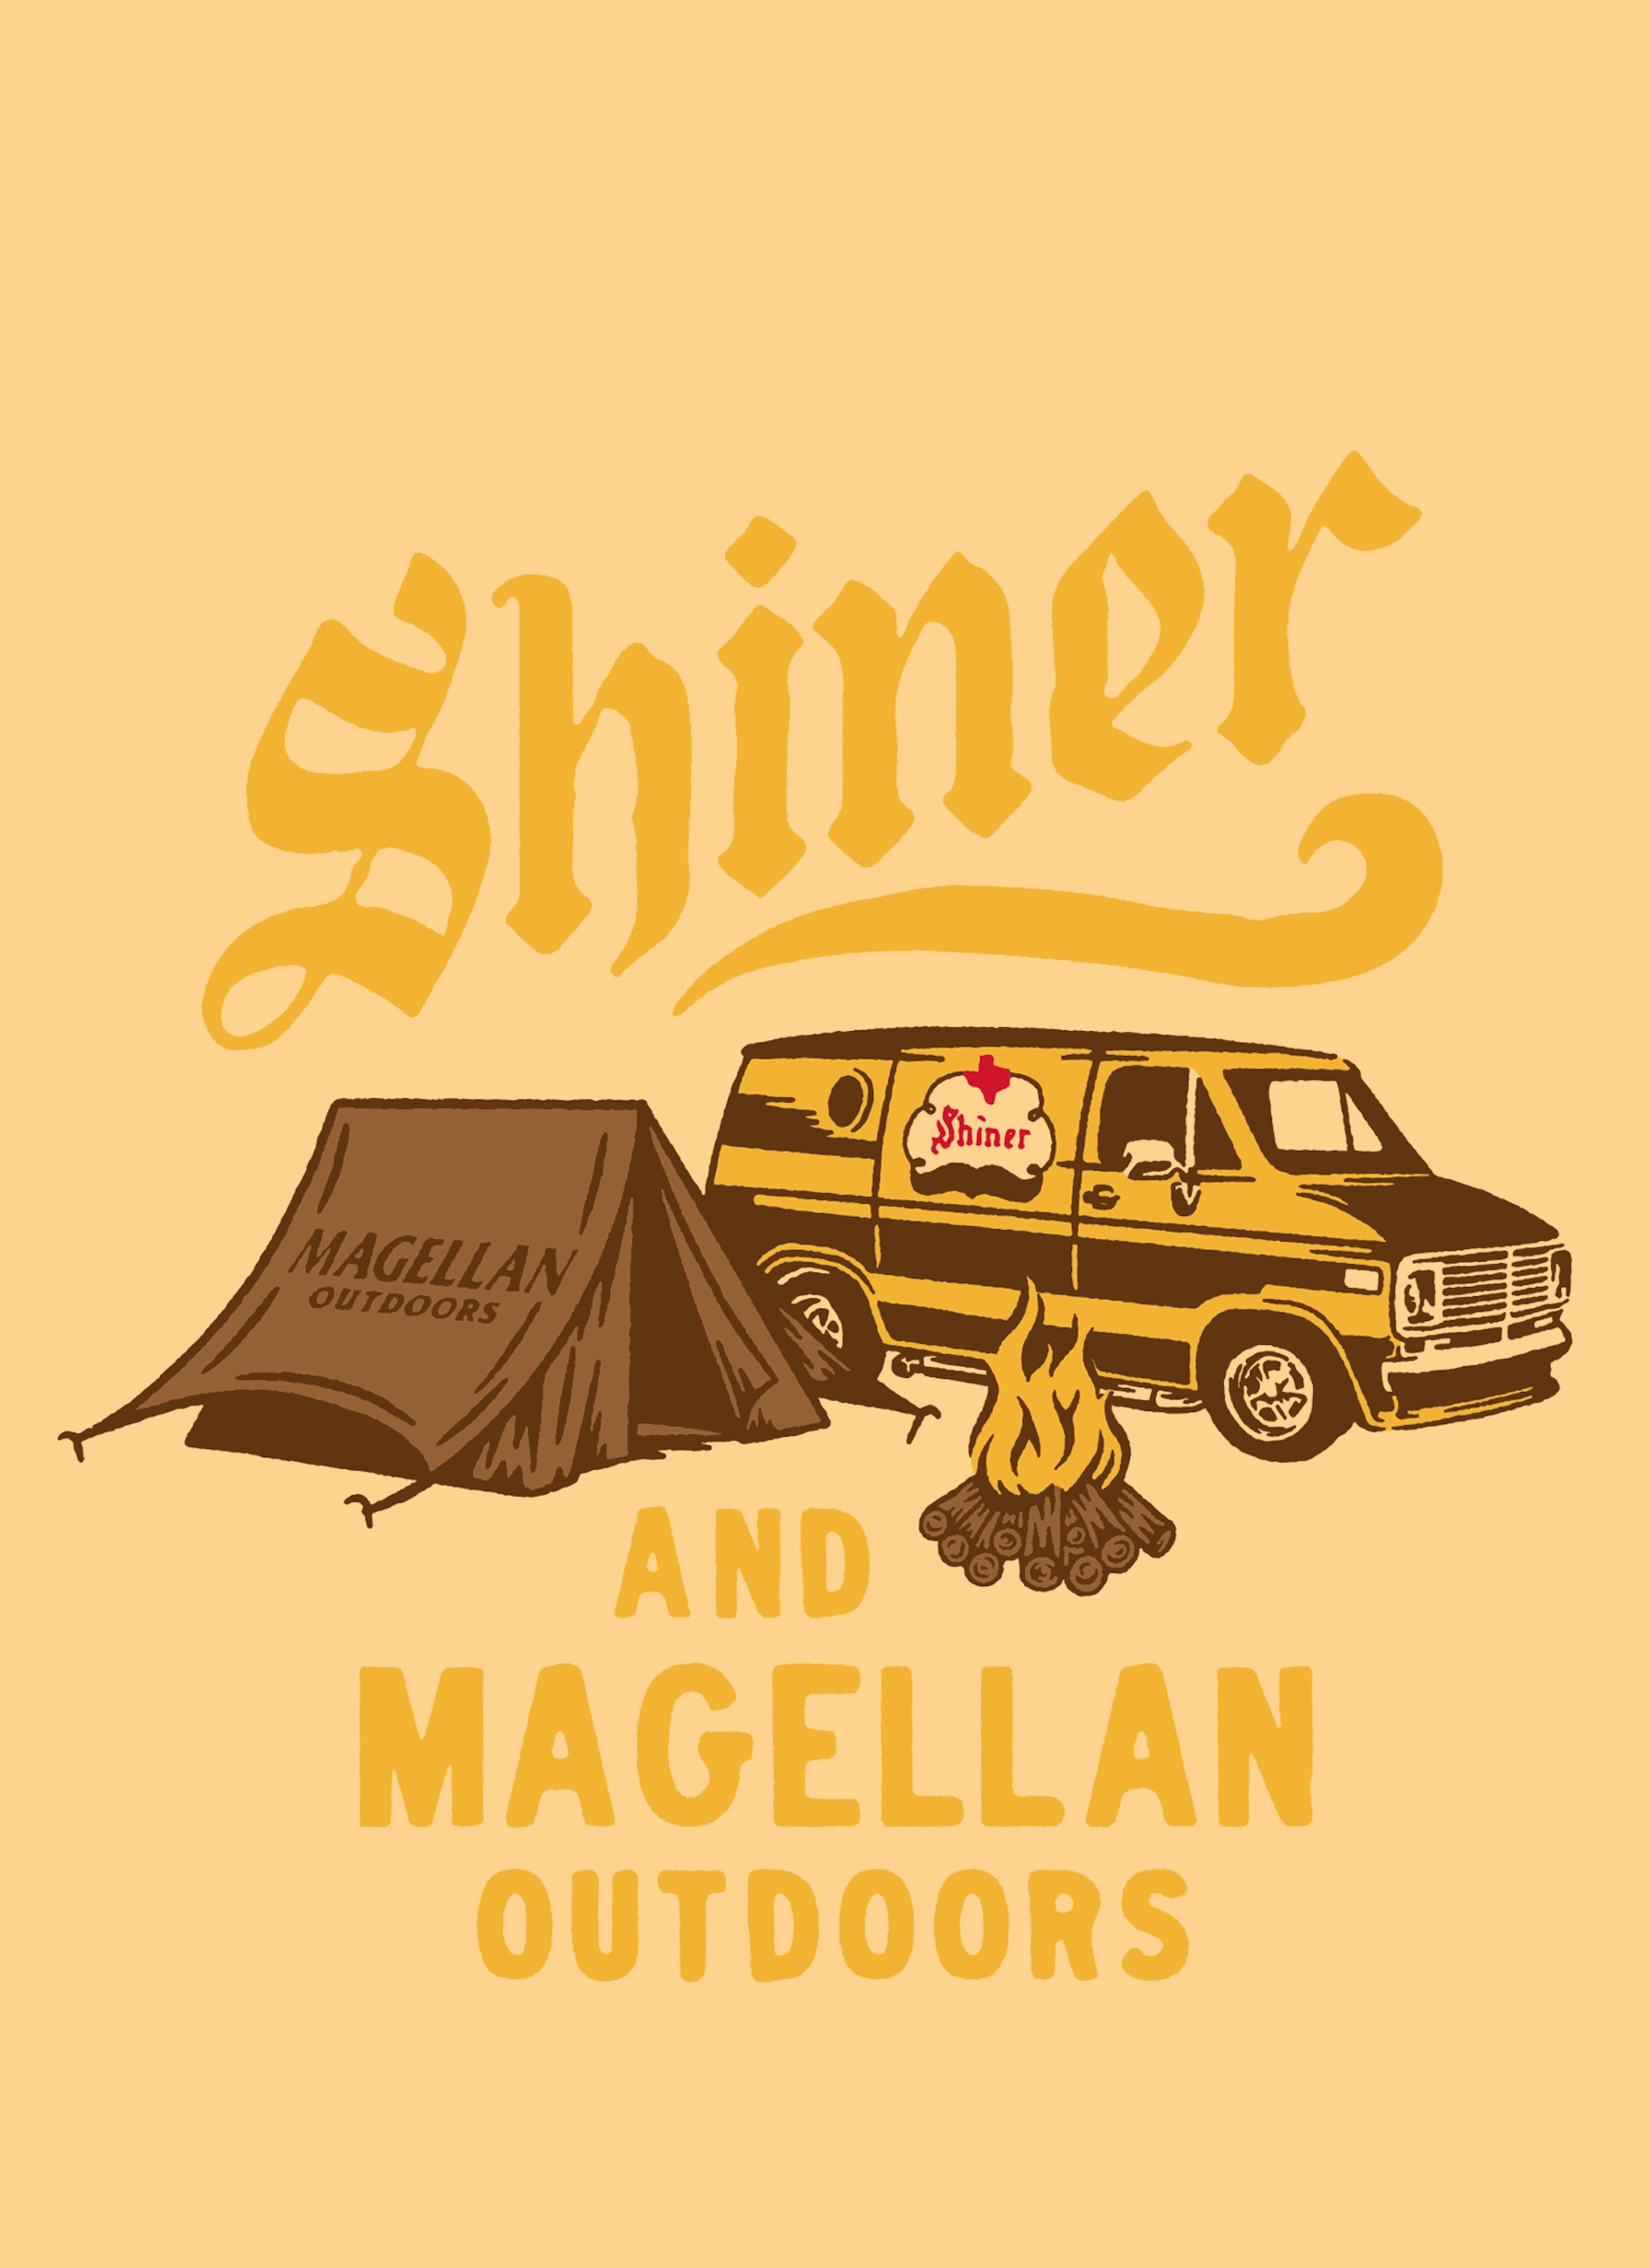 Magellan Outdoors & Shiner Beers Brand Merchandise